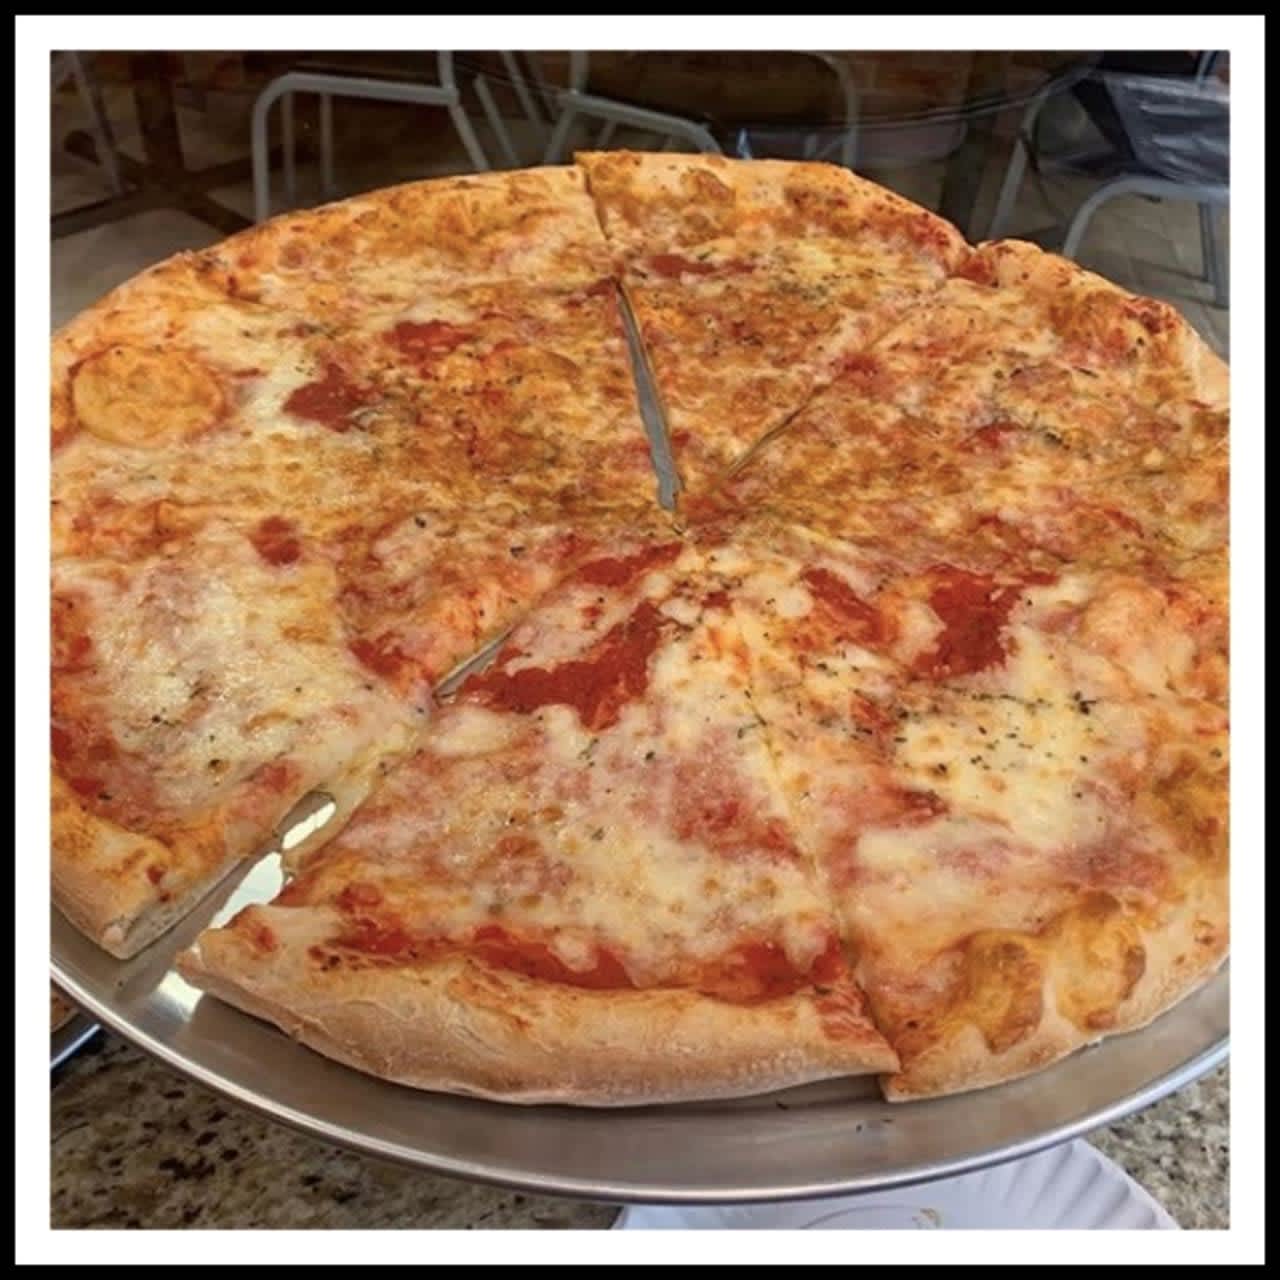 ASAP Pizza is open in Hackensack.